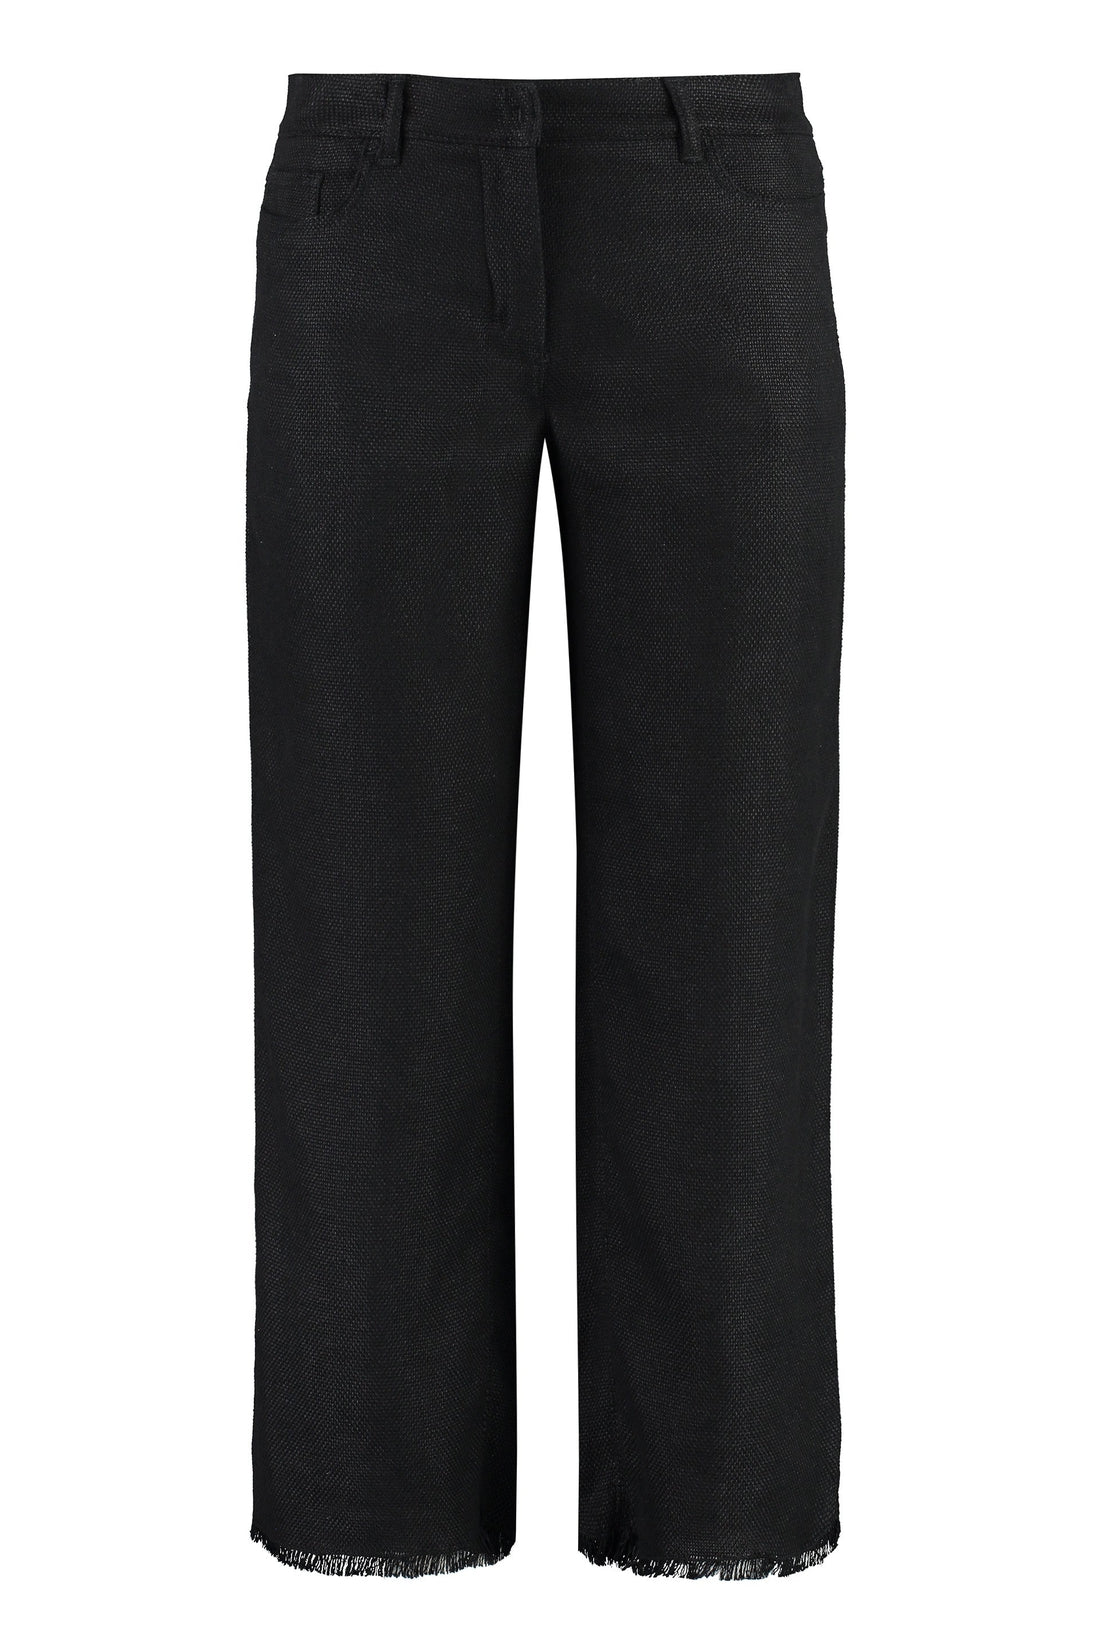 S MAX MARA-OUTLET-SALE-Cervia cotton-linen trousers-ARCHIVIST